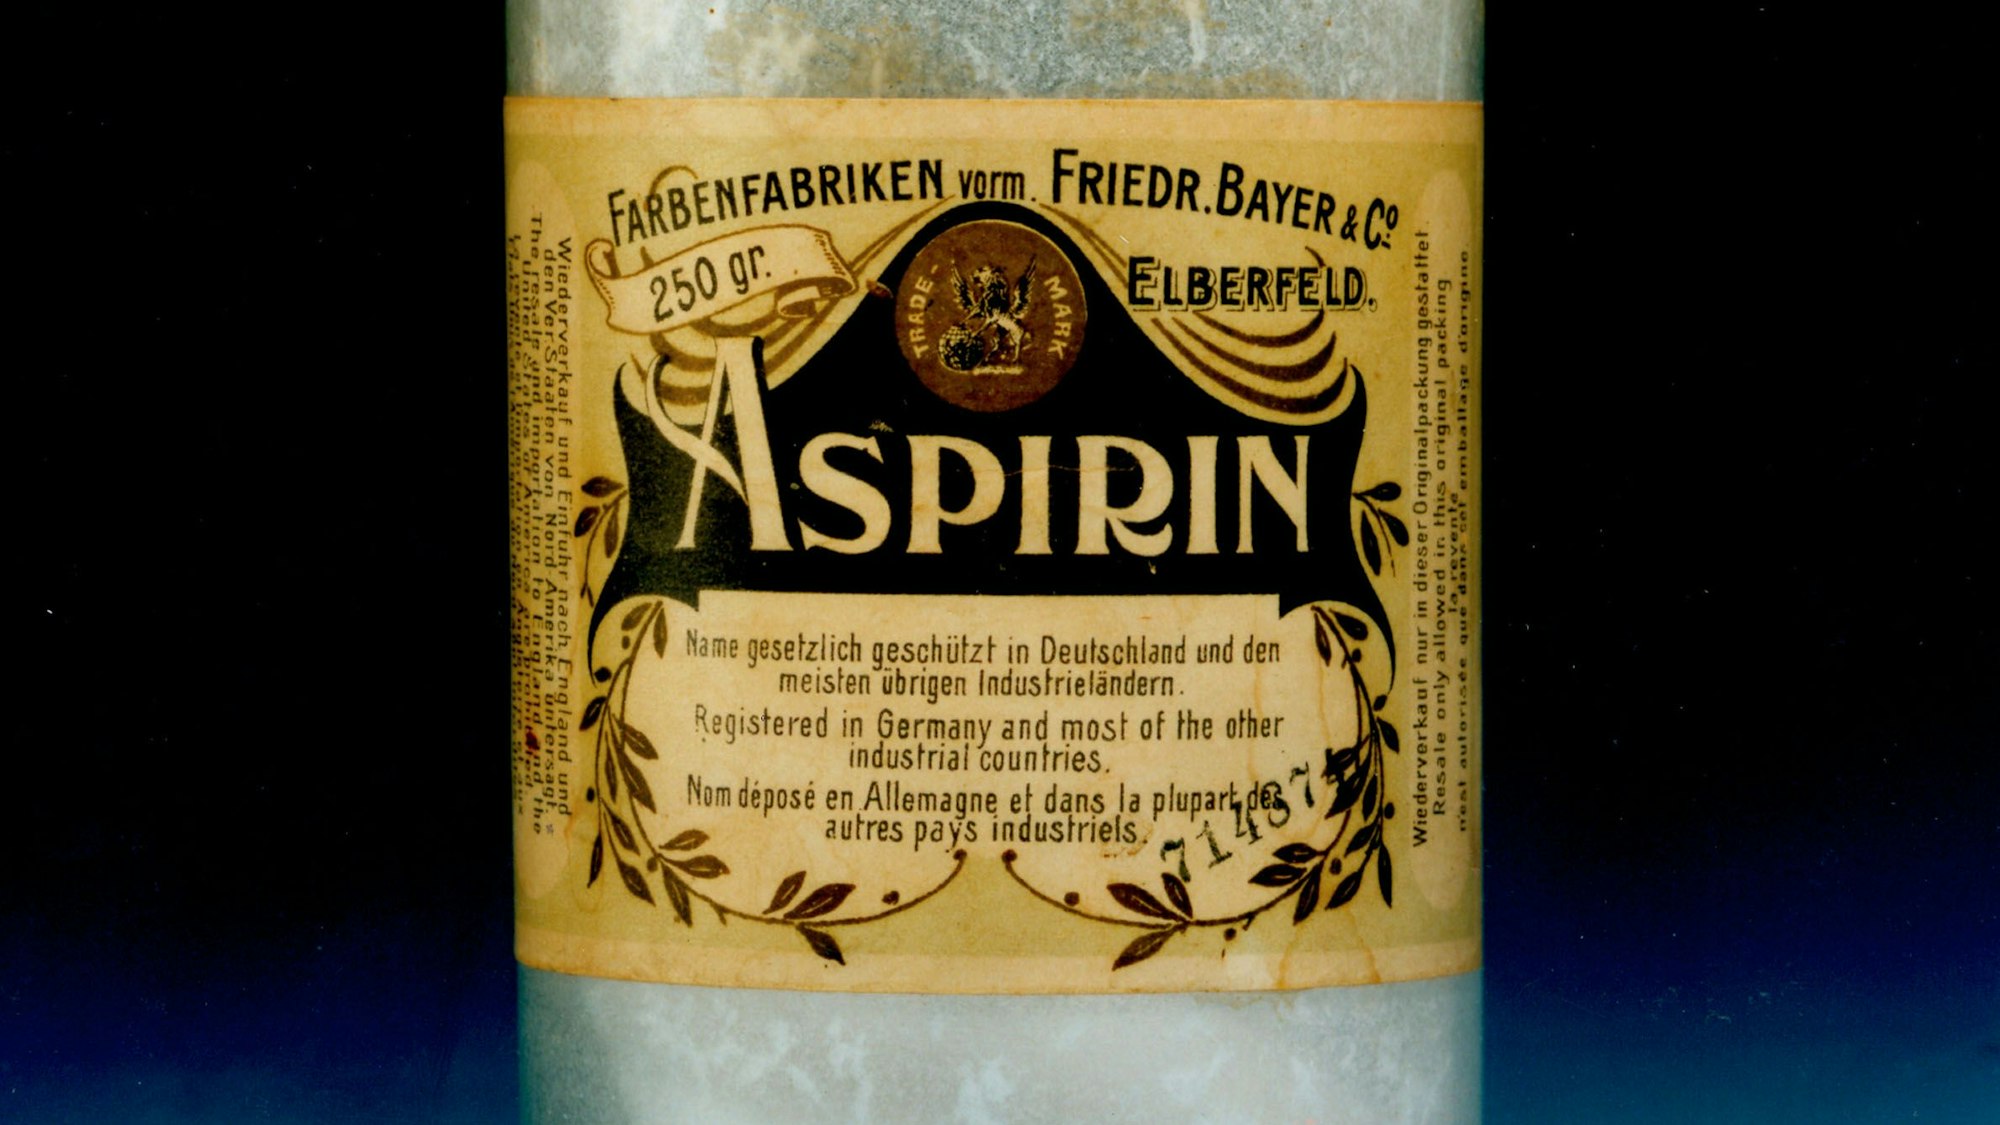 Ein Fläschchen mit Aspirin-Pulver